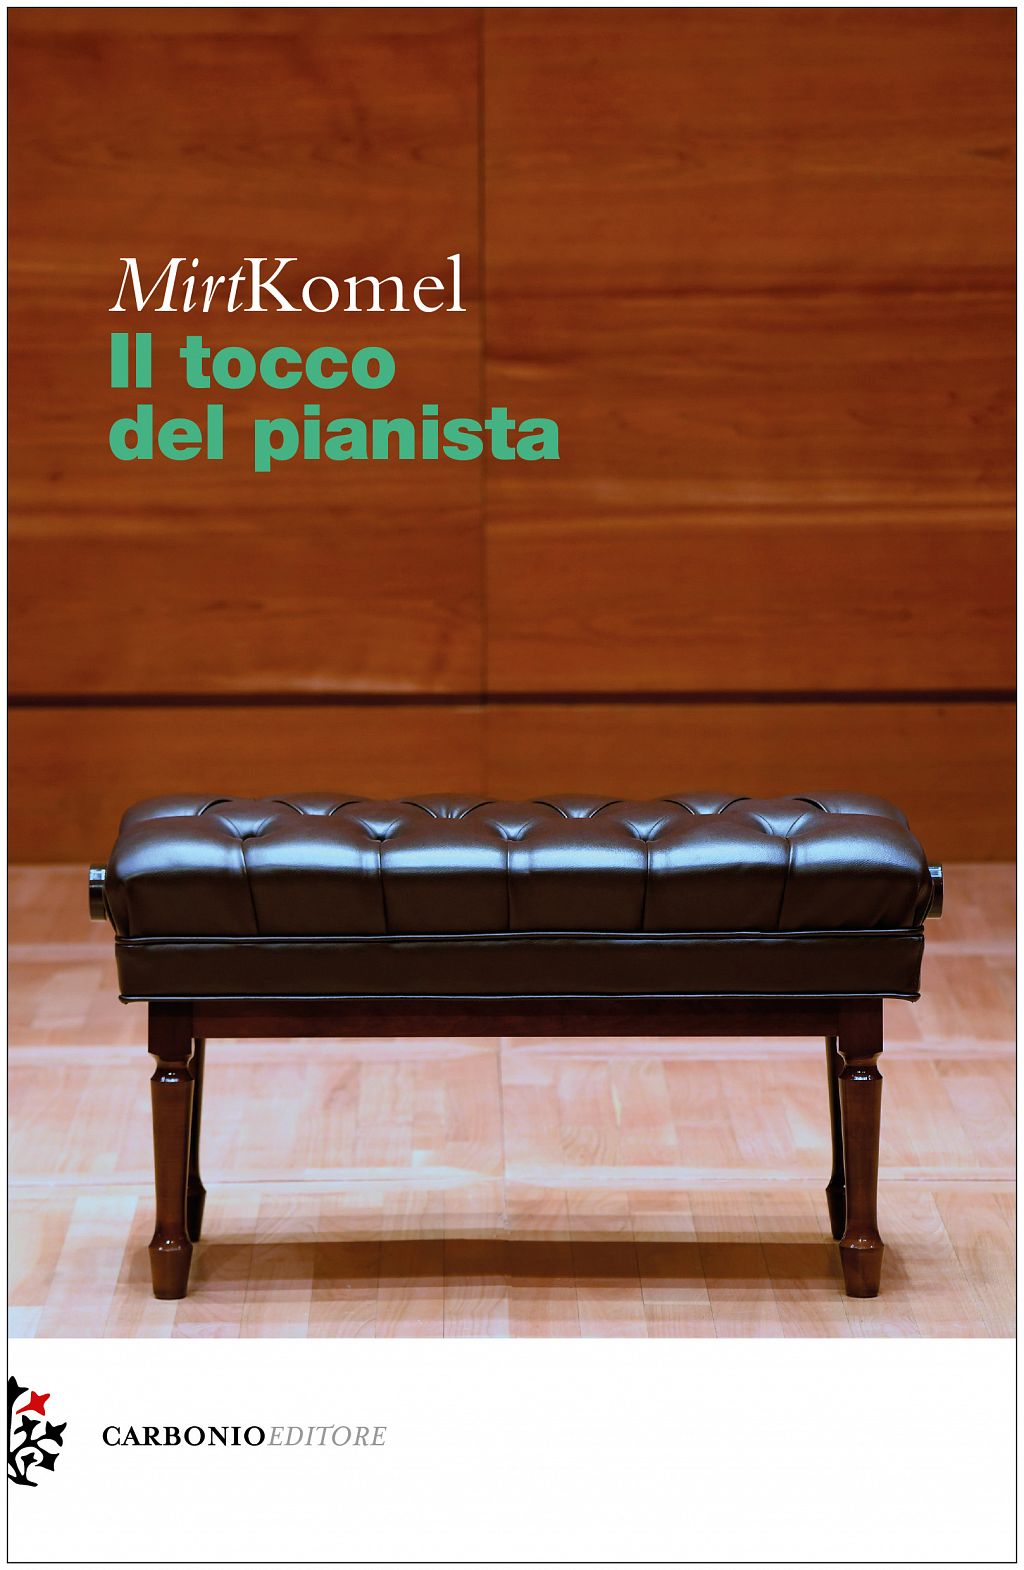 Il tocco del pianista (publikacija v italijanskem jeziku)